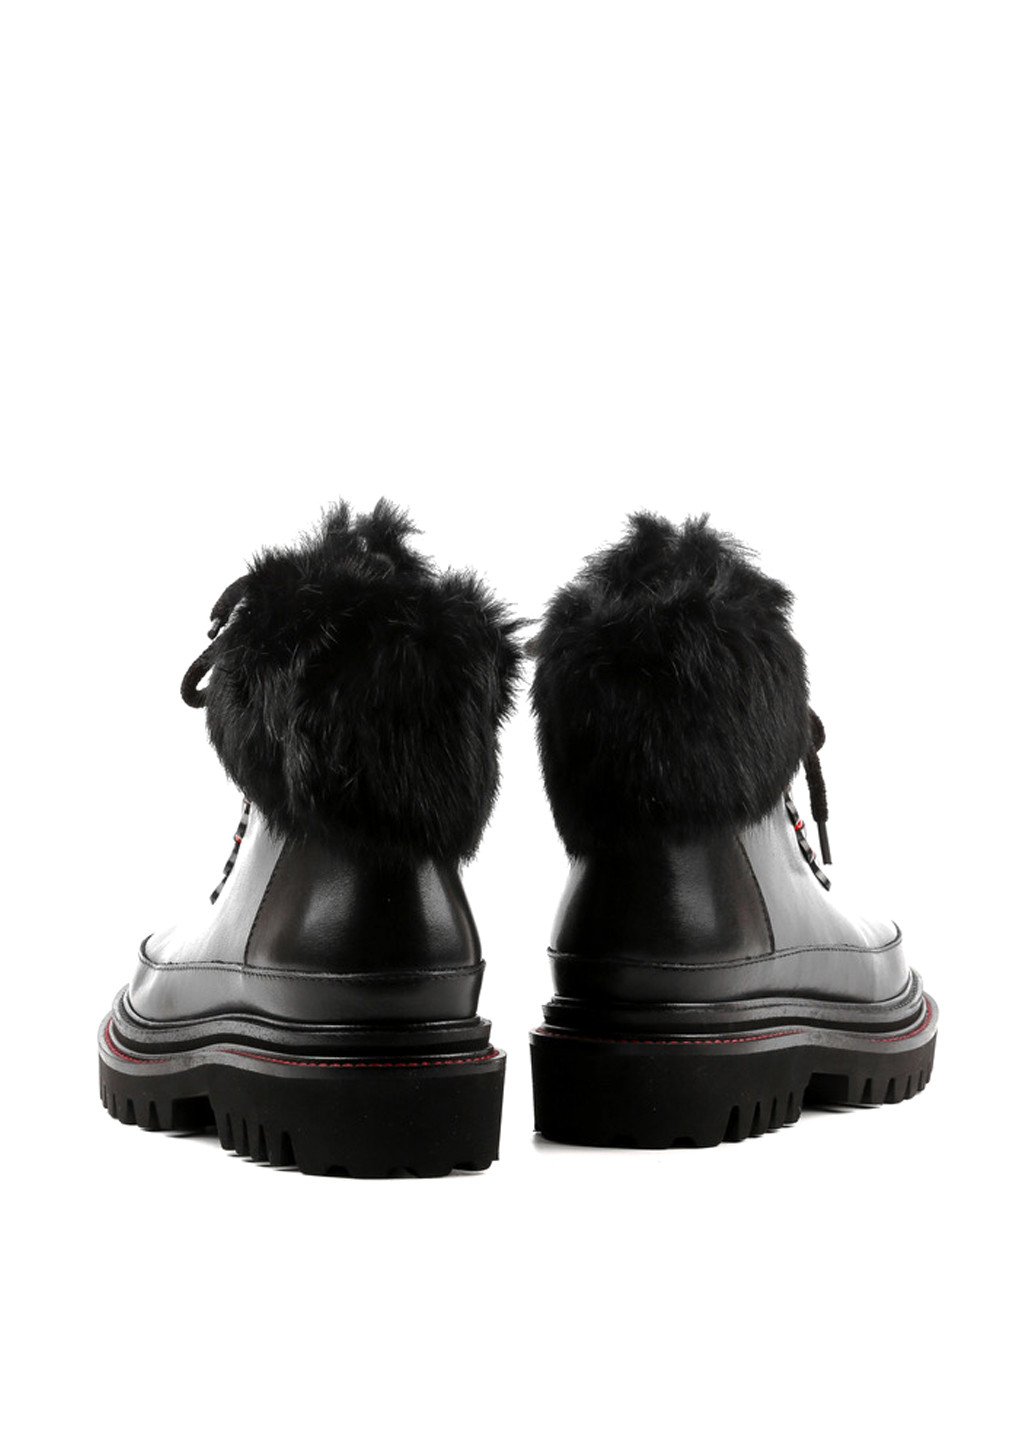 Зимние ботинки Le'BERDES со шнуровкой, на тракторной подошве, с мехом